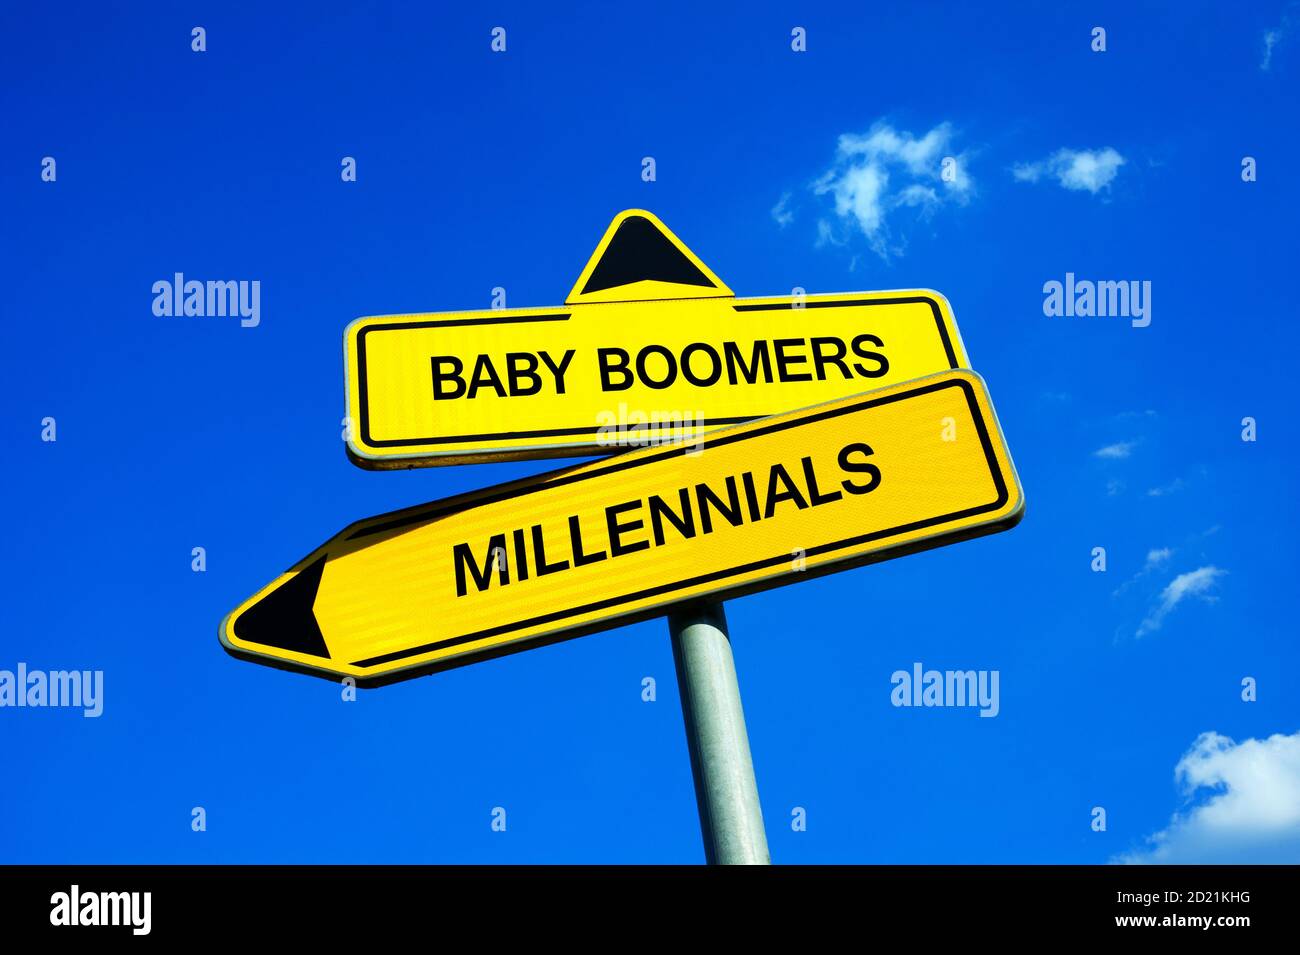 Baby Boomers vs Millennials - señal de tráfico con dos opciones - diferentes direcciones como metáfora de la brecha de generación, conflictos y choque entre jóvenes Foto de stock